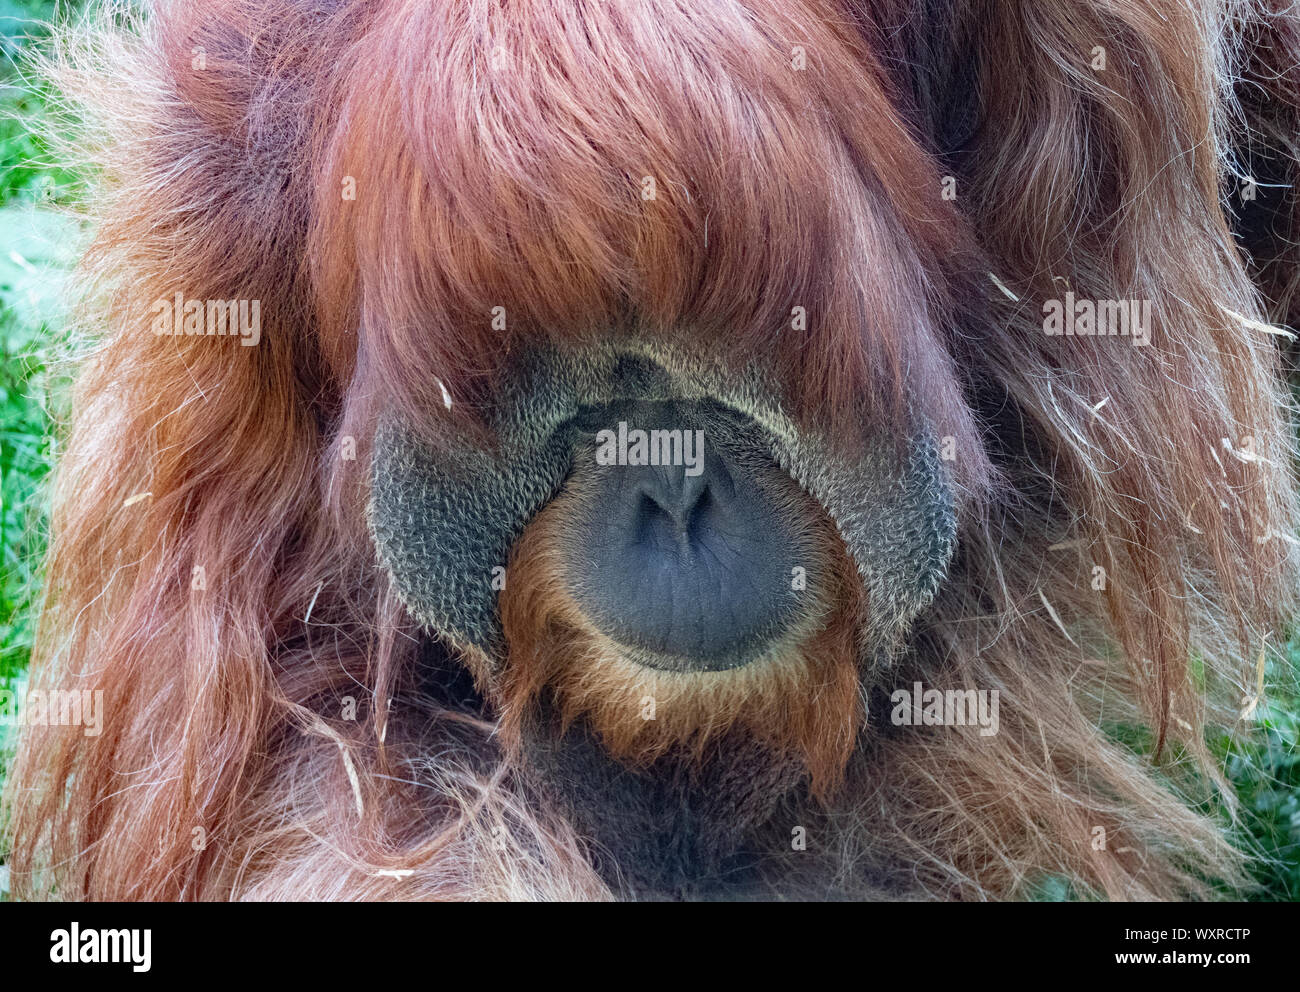 El macho adulto del orangután de Sumatra. Foto de stock